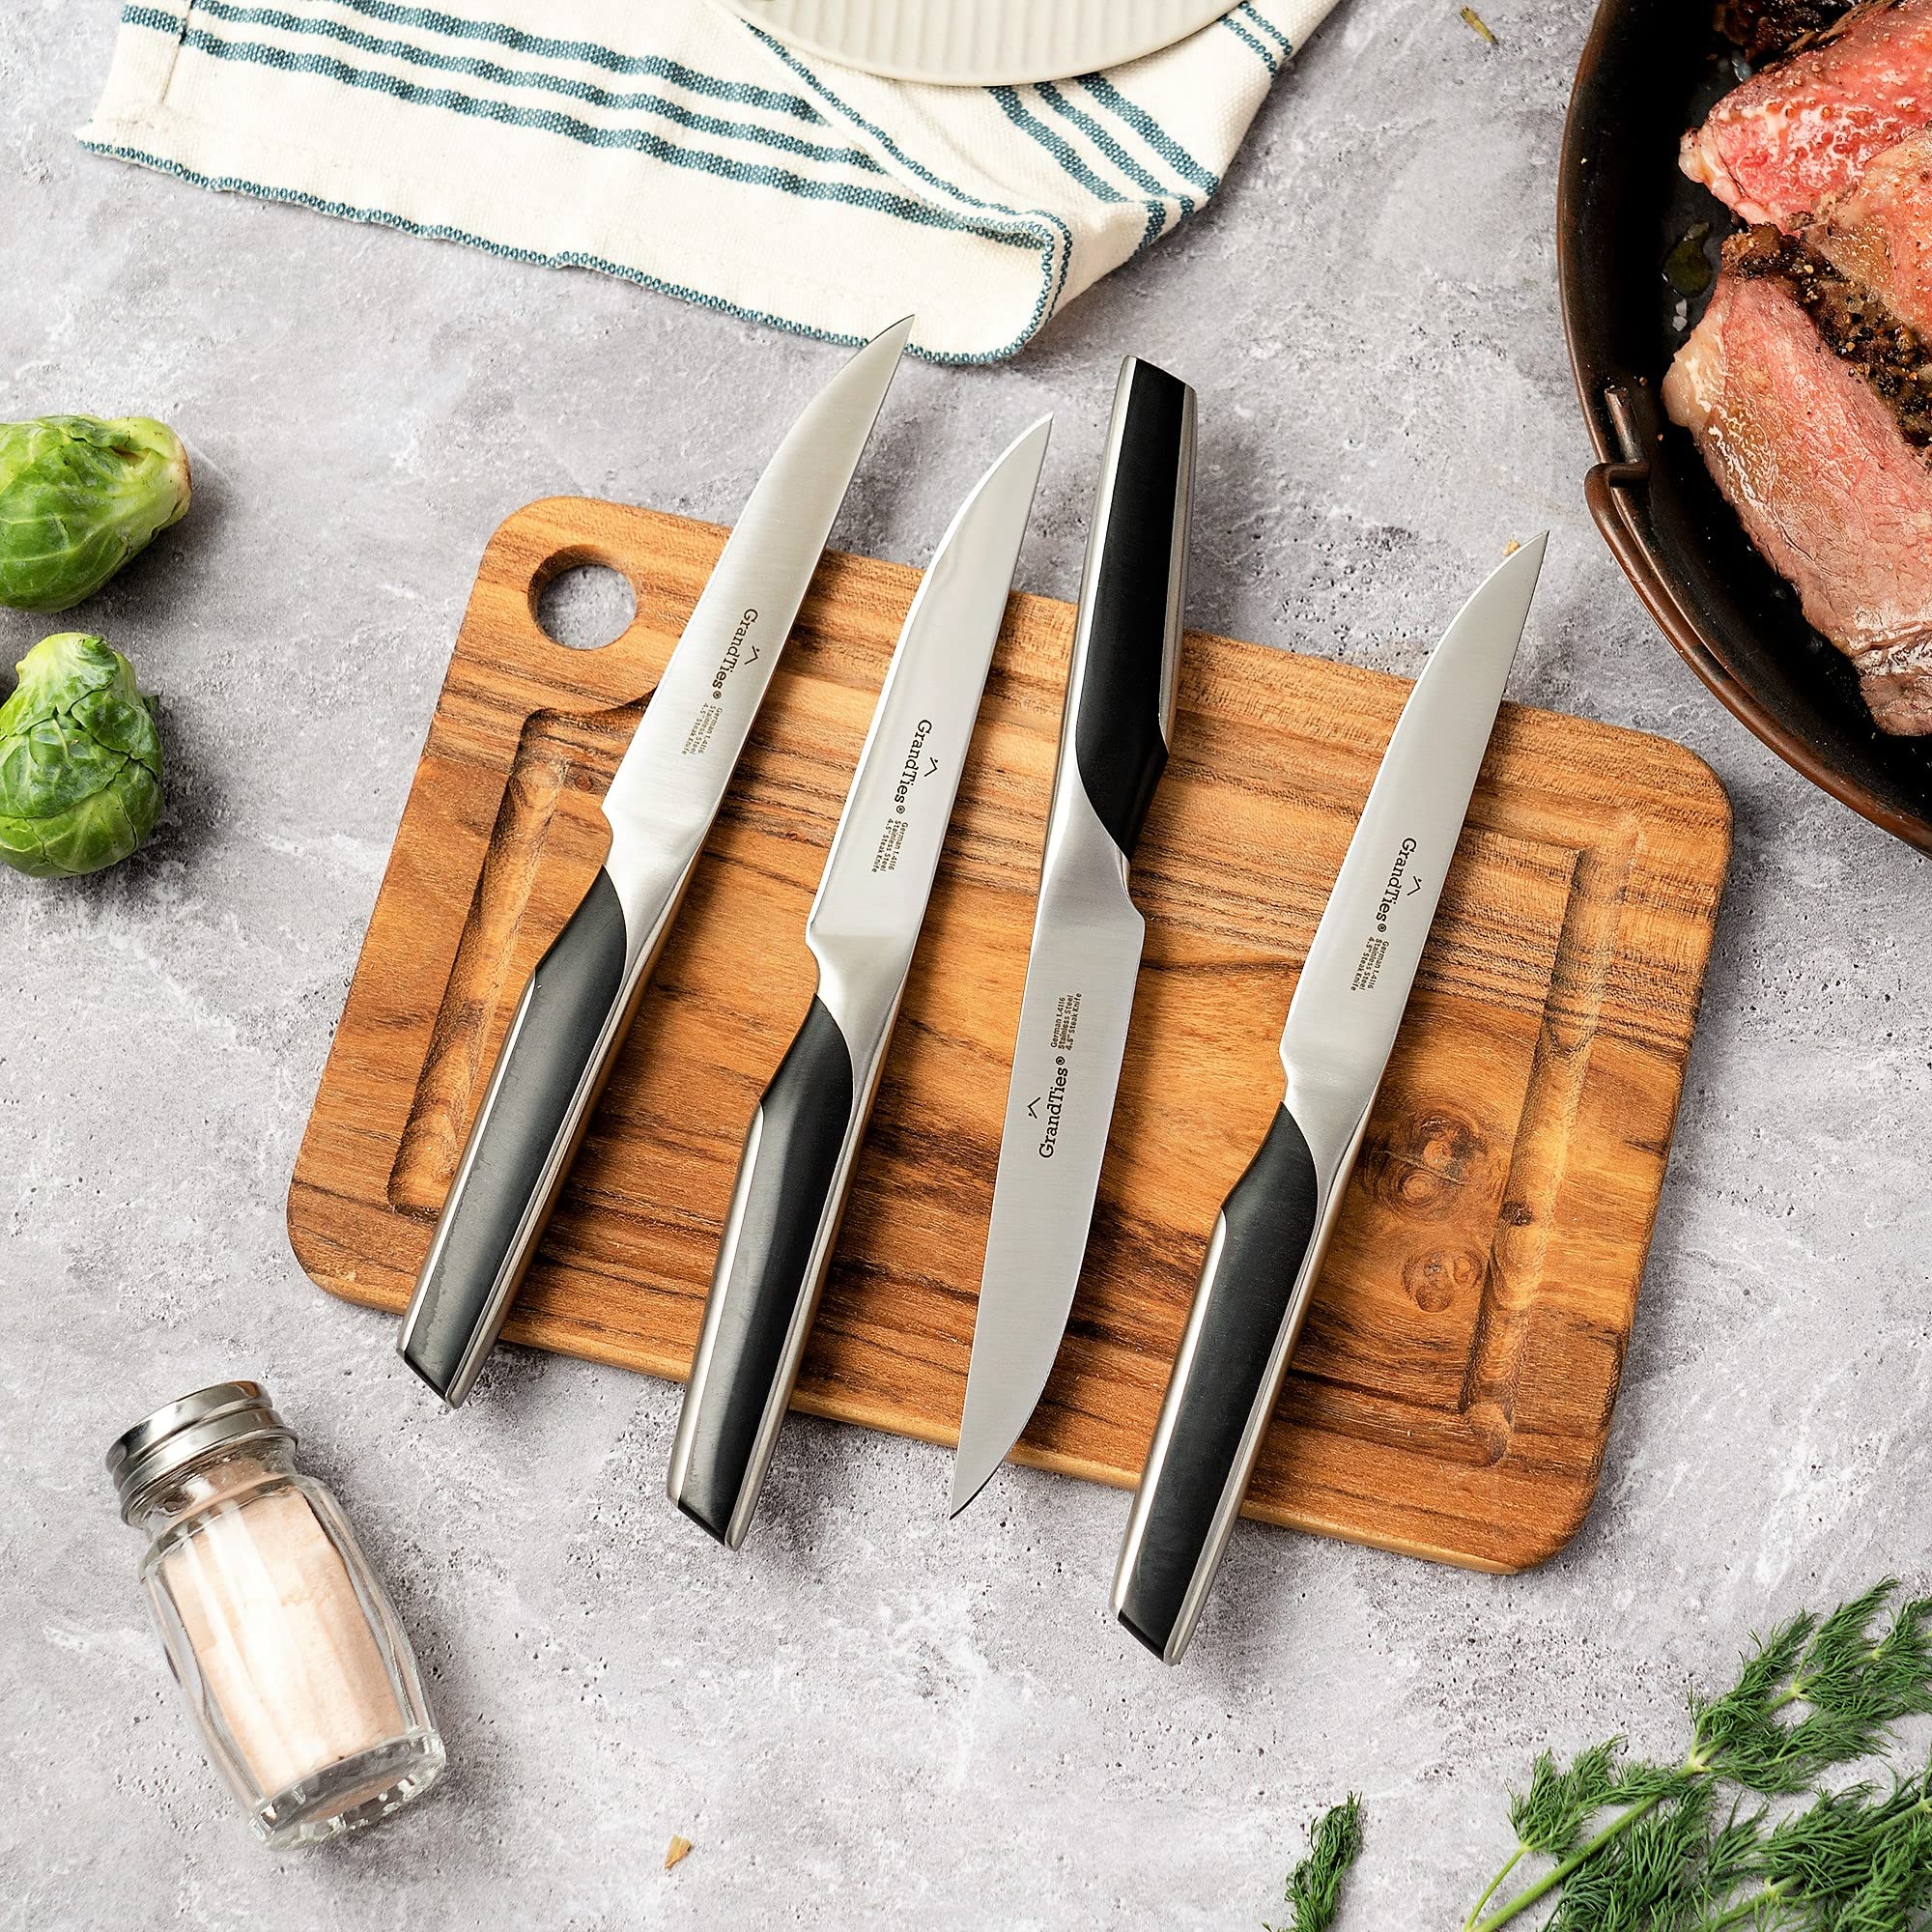 GRANDTIES FEINSTE Ultra Sharp Premium Steak Knife Non Serrated | High Carbon German Stainless Steel Steak Knives Set of 4 | Full Tang Knife Dinnerware Sets Gift with Designed Knife Box